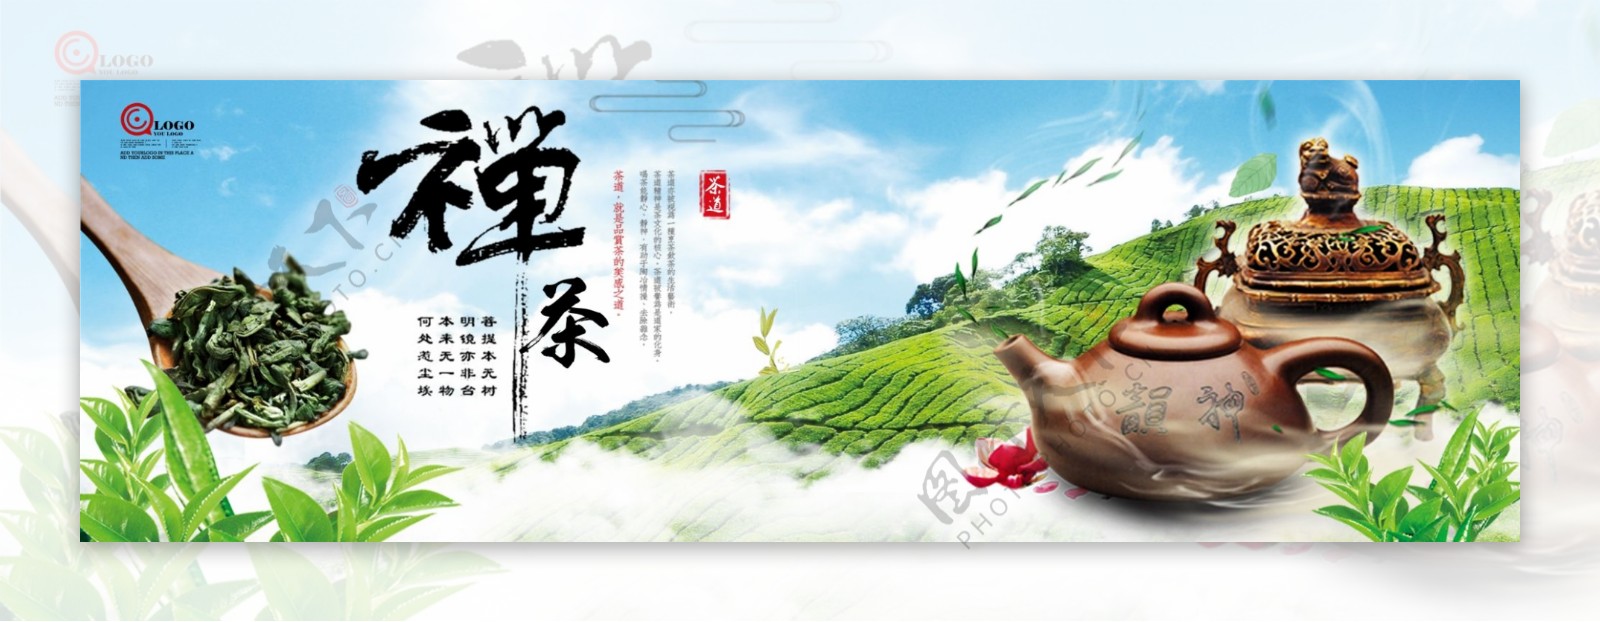 小清新茶道文化户外广告设计